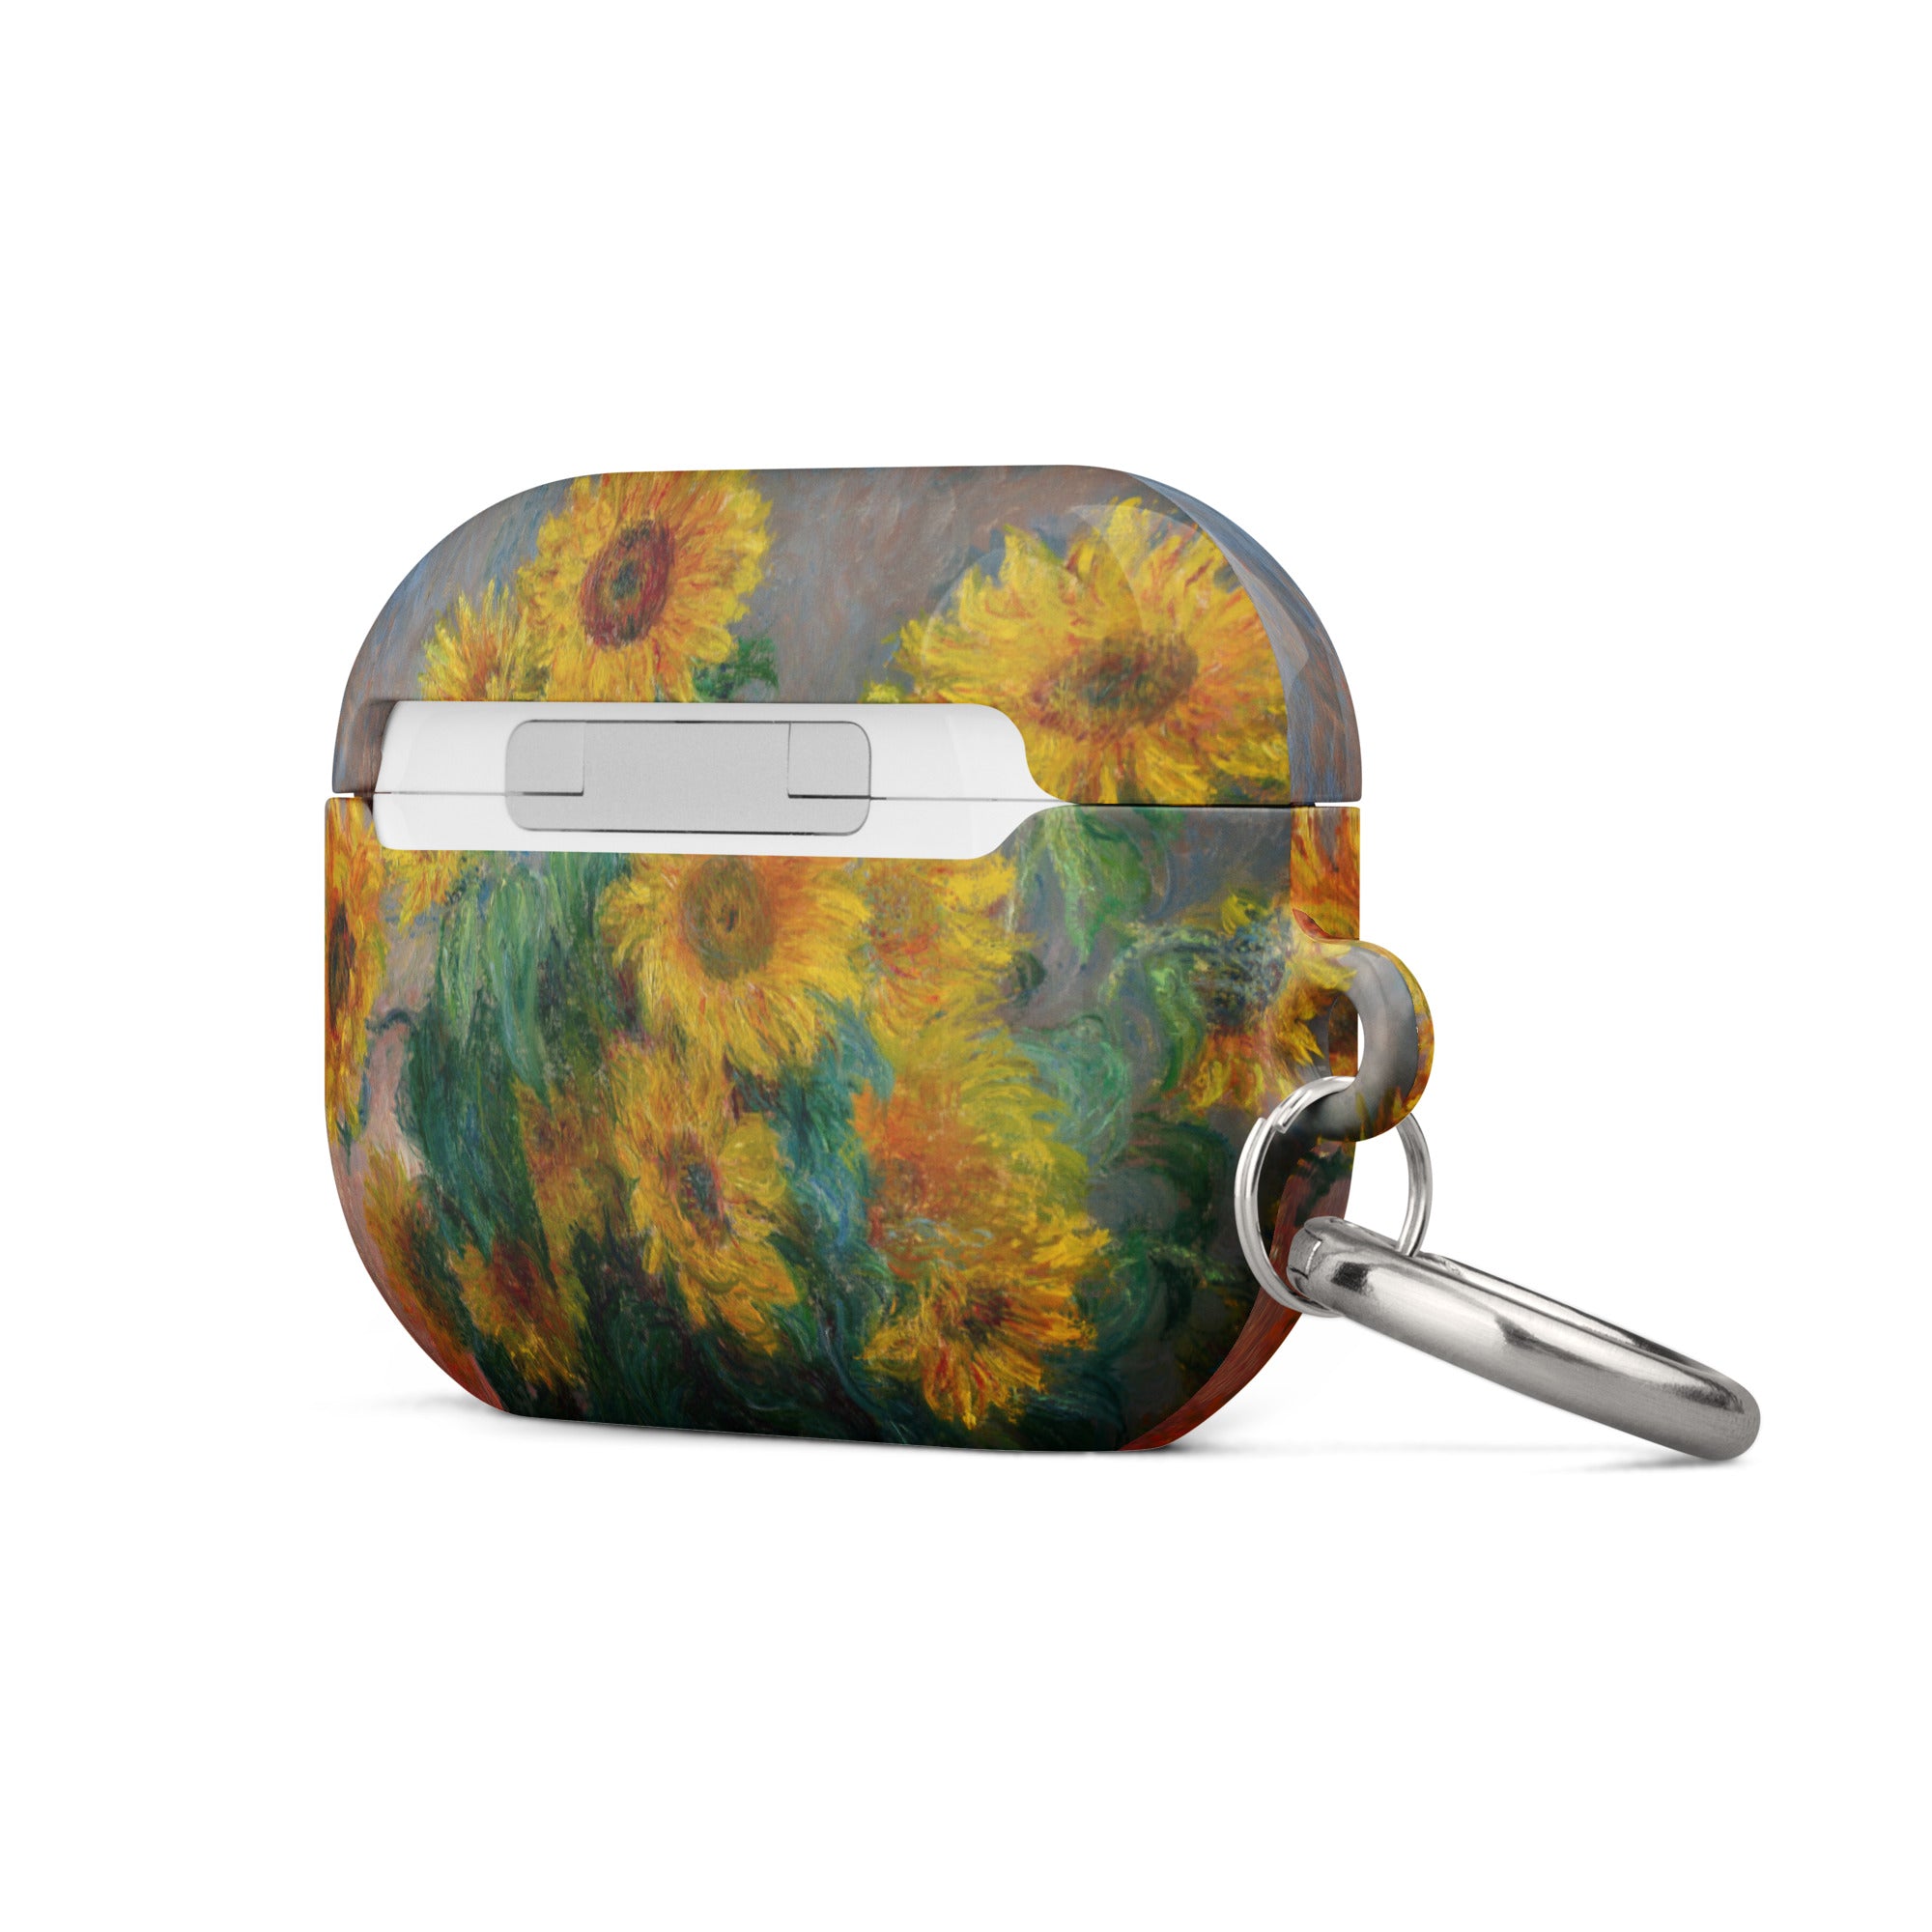 Claude Monet „Sonnenblumenstrauß“, berühmtes Gemälde, AirPods®-Hülle | Premium-Kunsthülle für AirPods® 